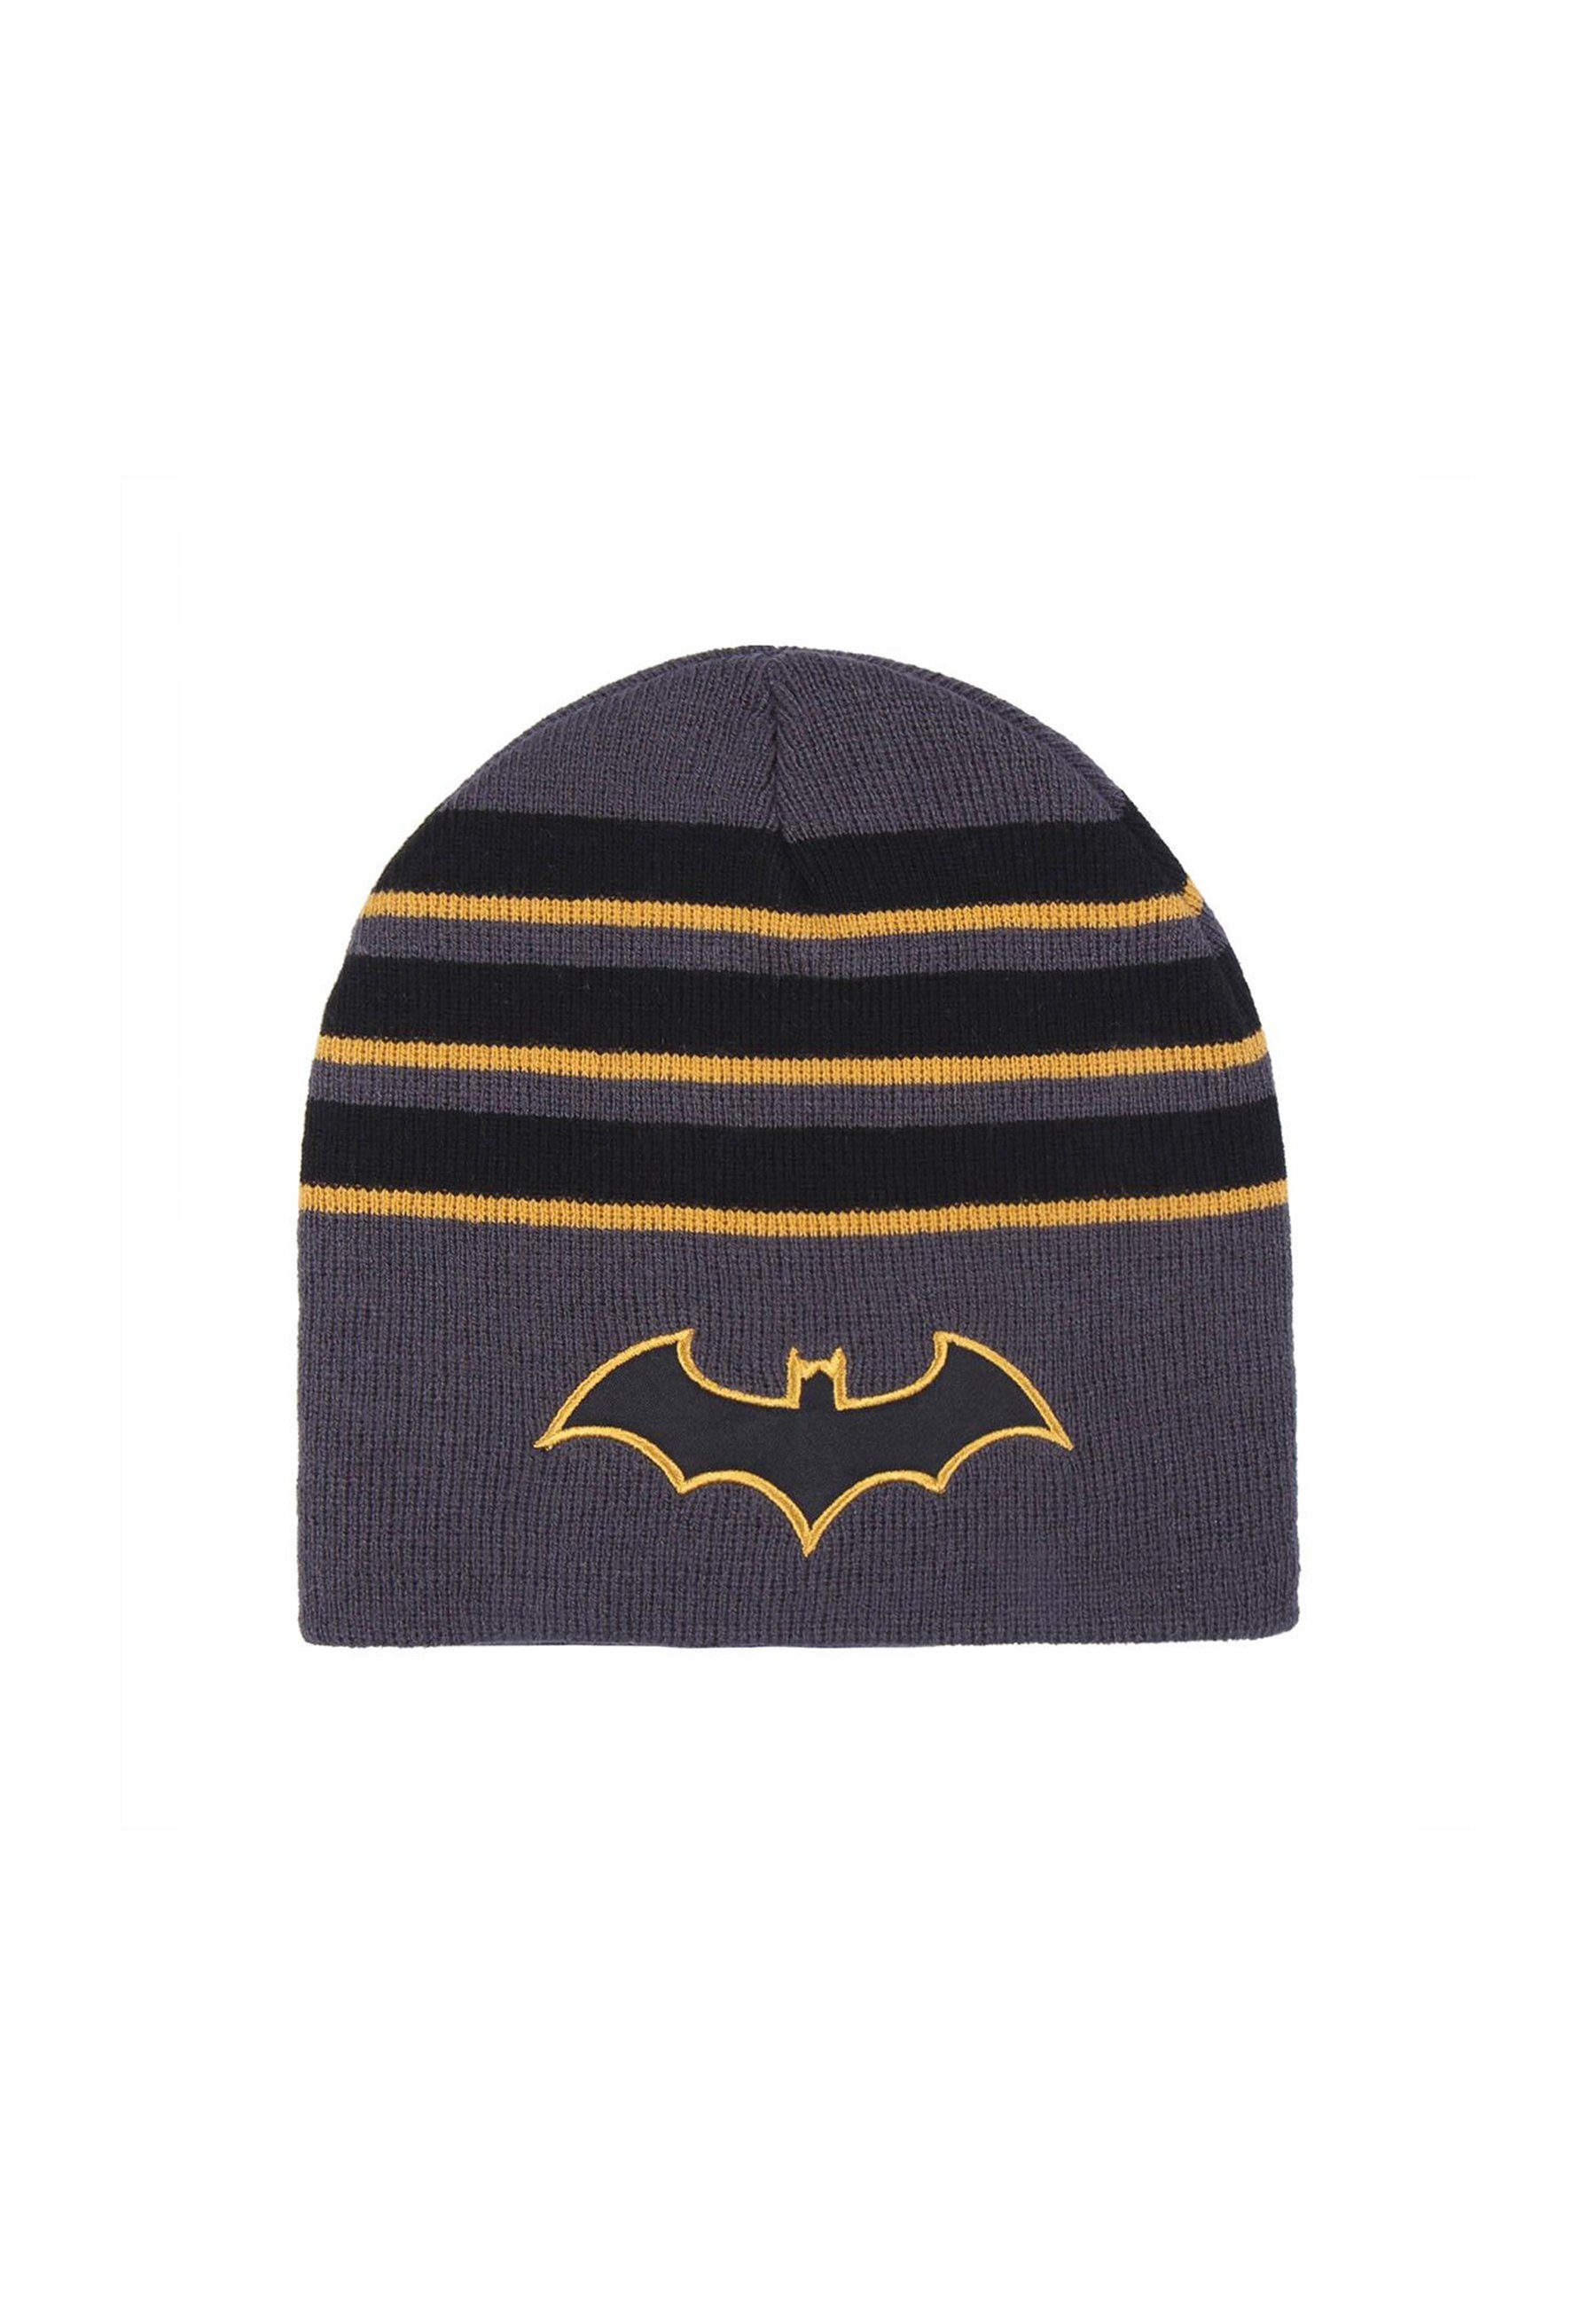 Batman Beanie Kinder Jungen Strickmützte Winter-Beanie-Mütze